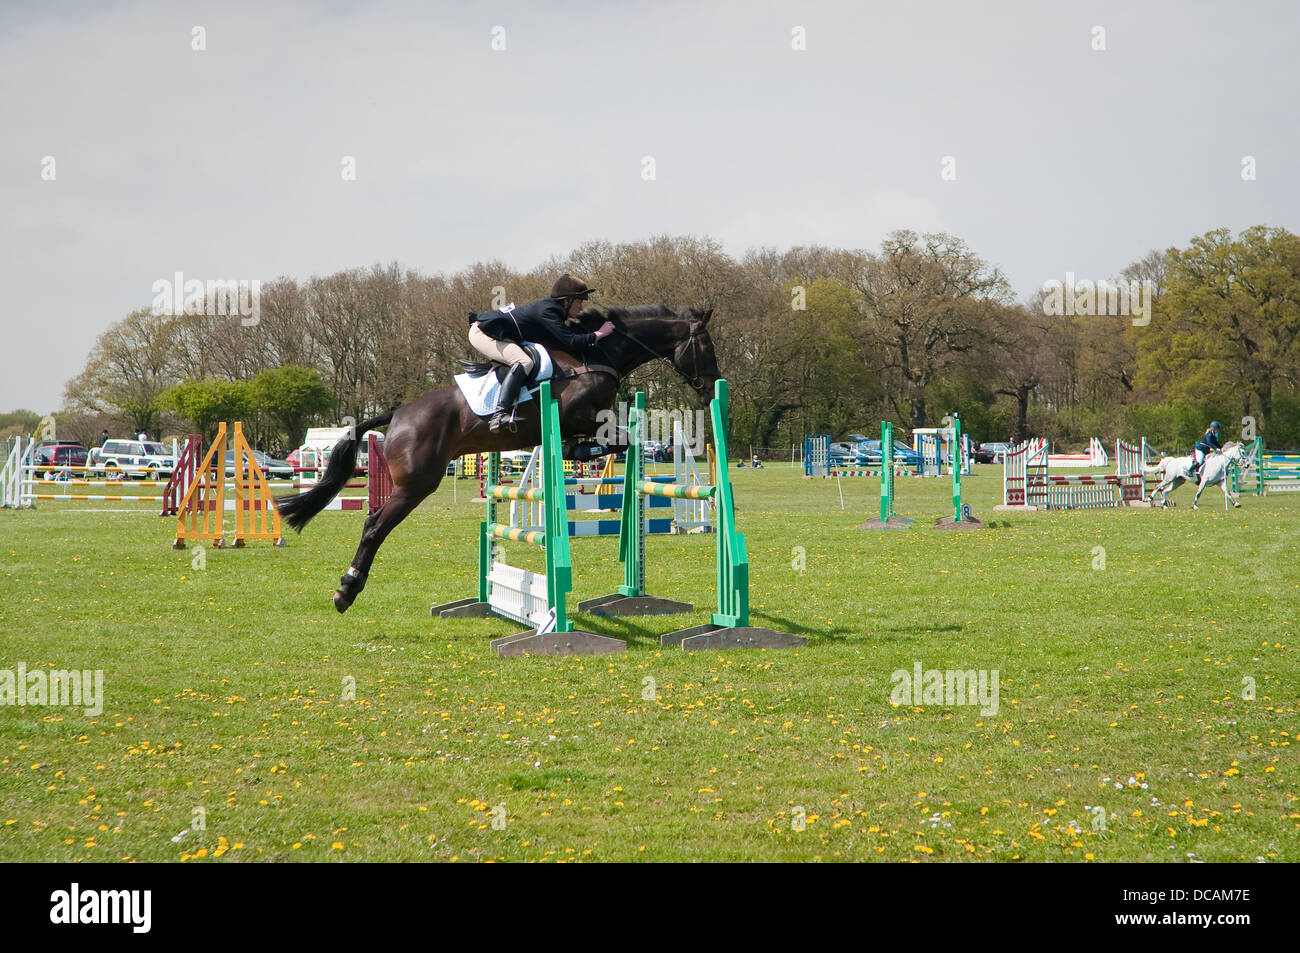 Jeune homme rider au cours de concours de sauts à la Suffolk Horse Show. Showgrounds Ipswich, Suffolk, UK. Banque D'Images